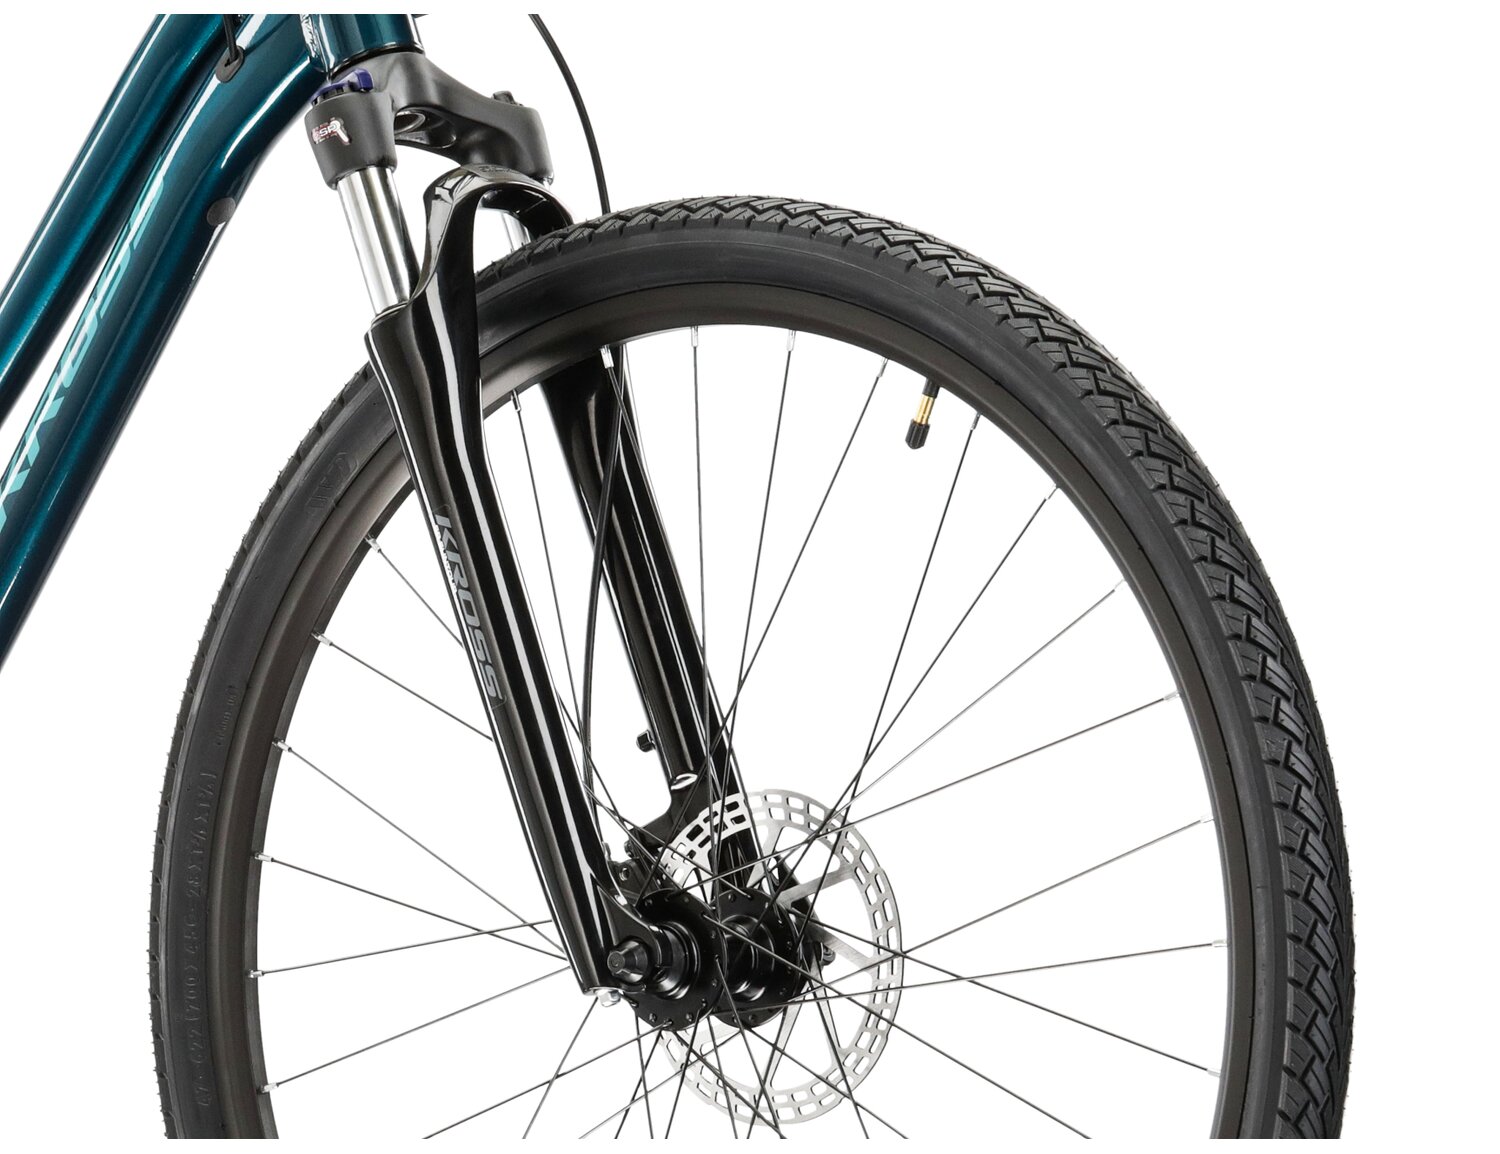 Aluminowa rama, amortyzowany widelec SR SUNTOUR NEX HLO oraz opony Wanda w rowerze crossowym damskim KROSS Evado 5.0 